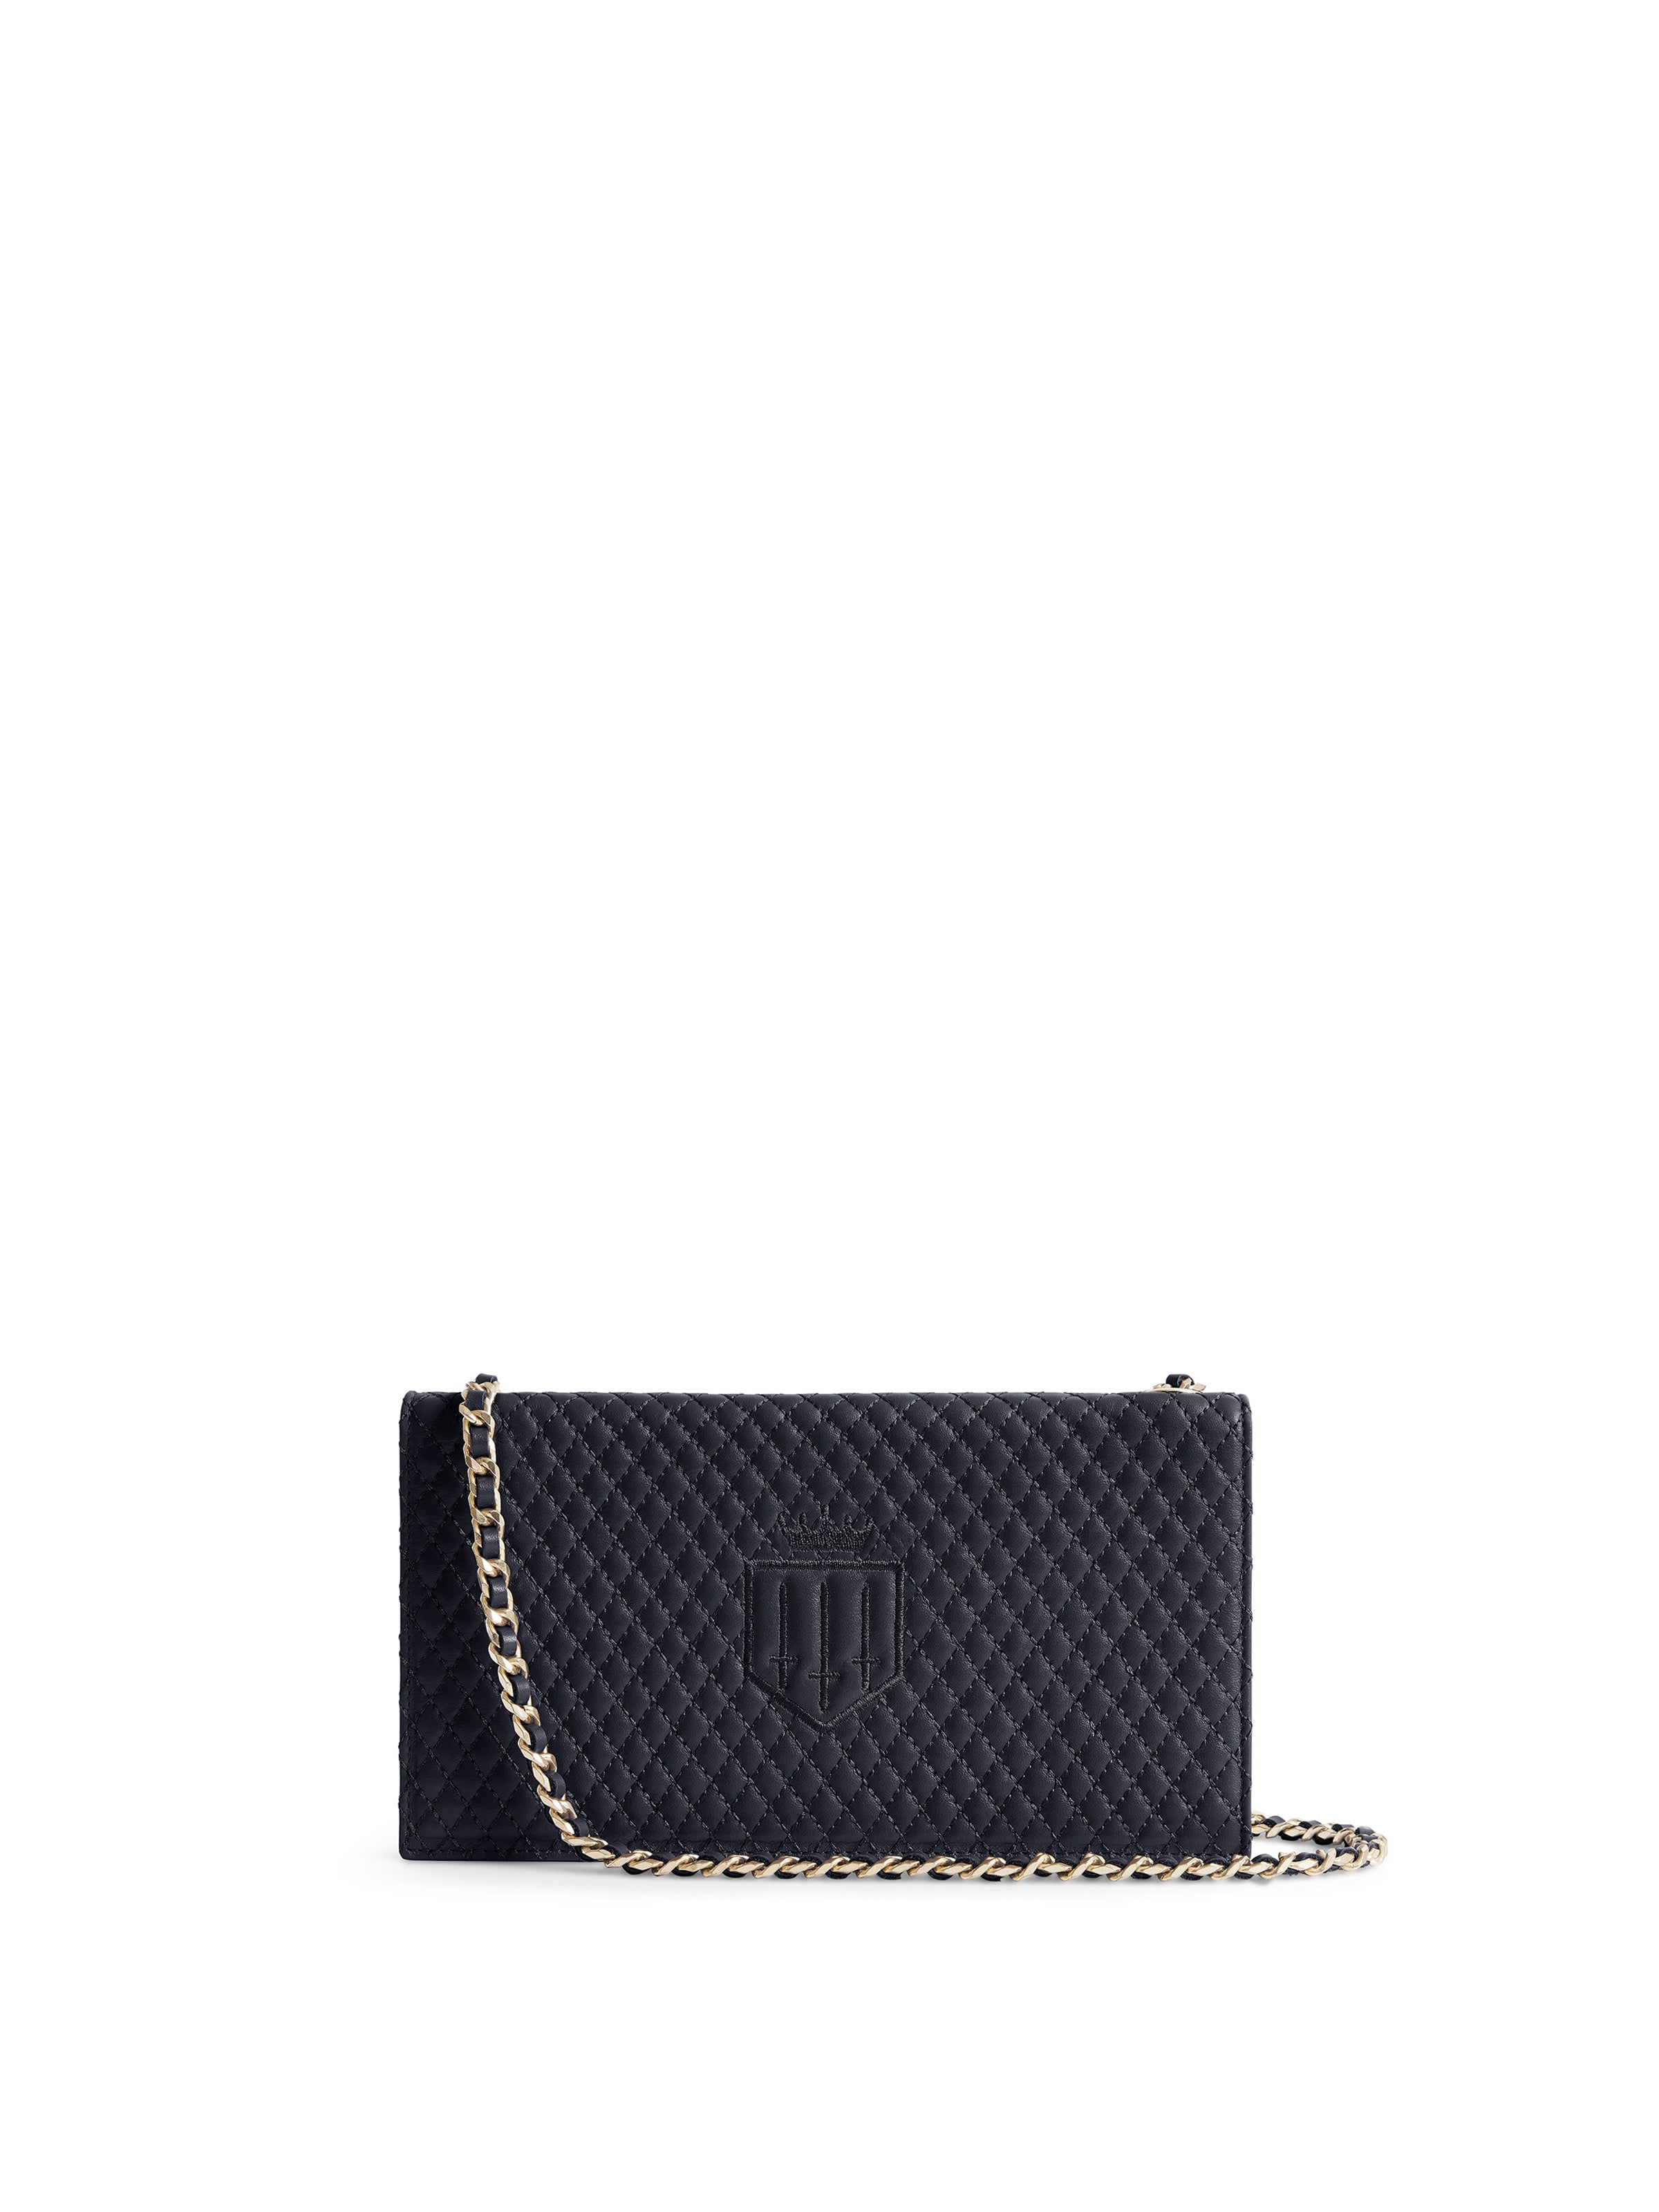 Stanton - Women's Clutch Wallet - Navy Leather | Fairfax & Favor